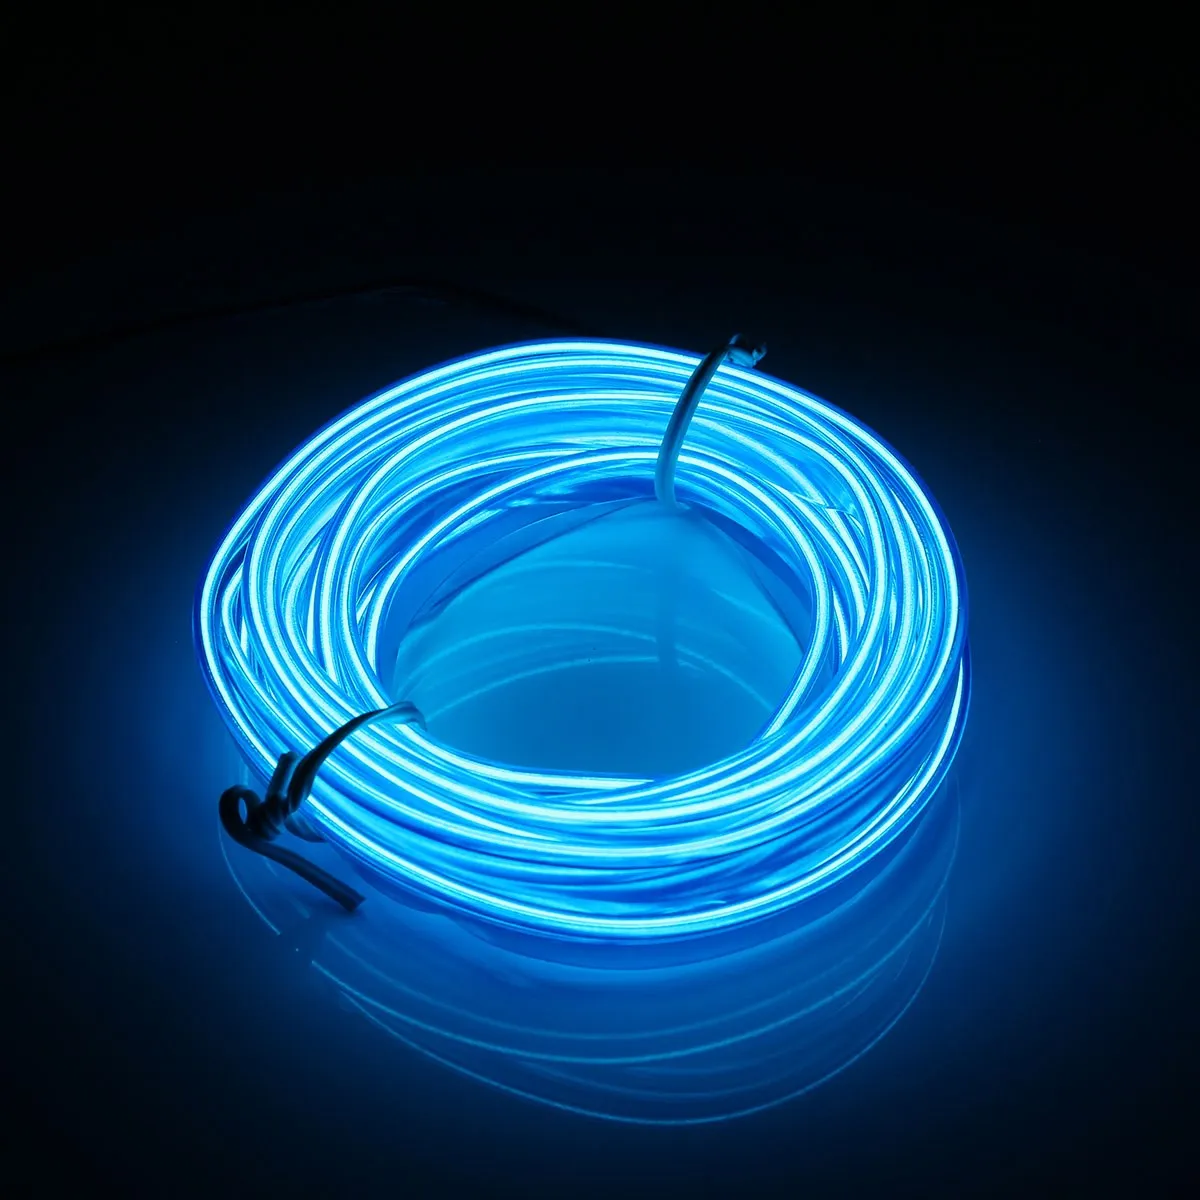 Smuxi 2 м светодиодный EL Wire Neon EL Wire светящаяся лента, светильник, веревочный контроллер, автомобильный декор, Танцевальная вечеринка, водонепроницаемый - Испускаемый цвет: Blue